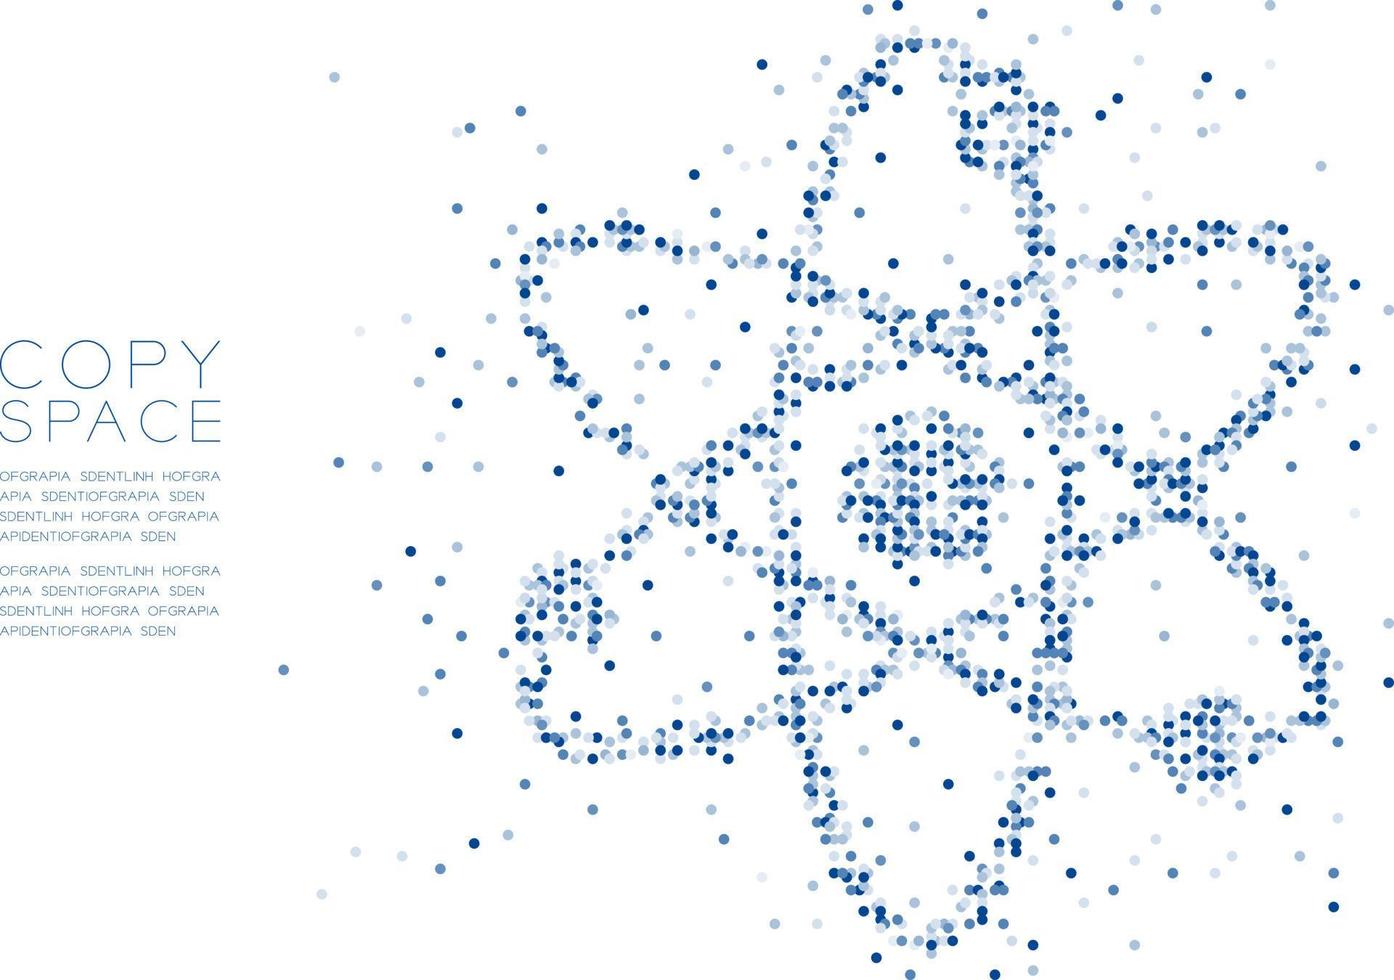 abstrakter geometrischer Kreis Punkt Molekül Partikel Muster Atom Symbol Form, vr Technologie Wissenschaft Konzept Design blaue Farbe Abbildung isoliert auf weißem Hintergrund mit Kopie Raum, Vektor eps 10